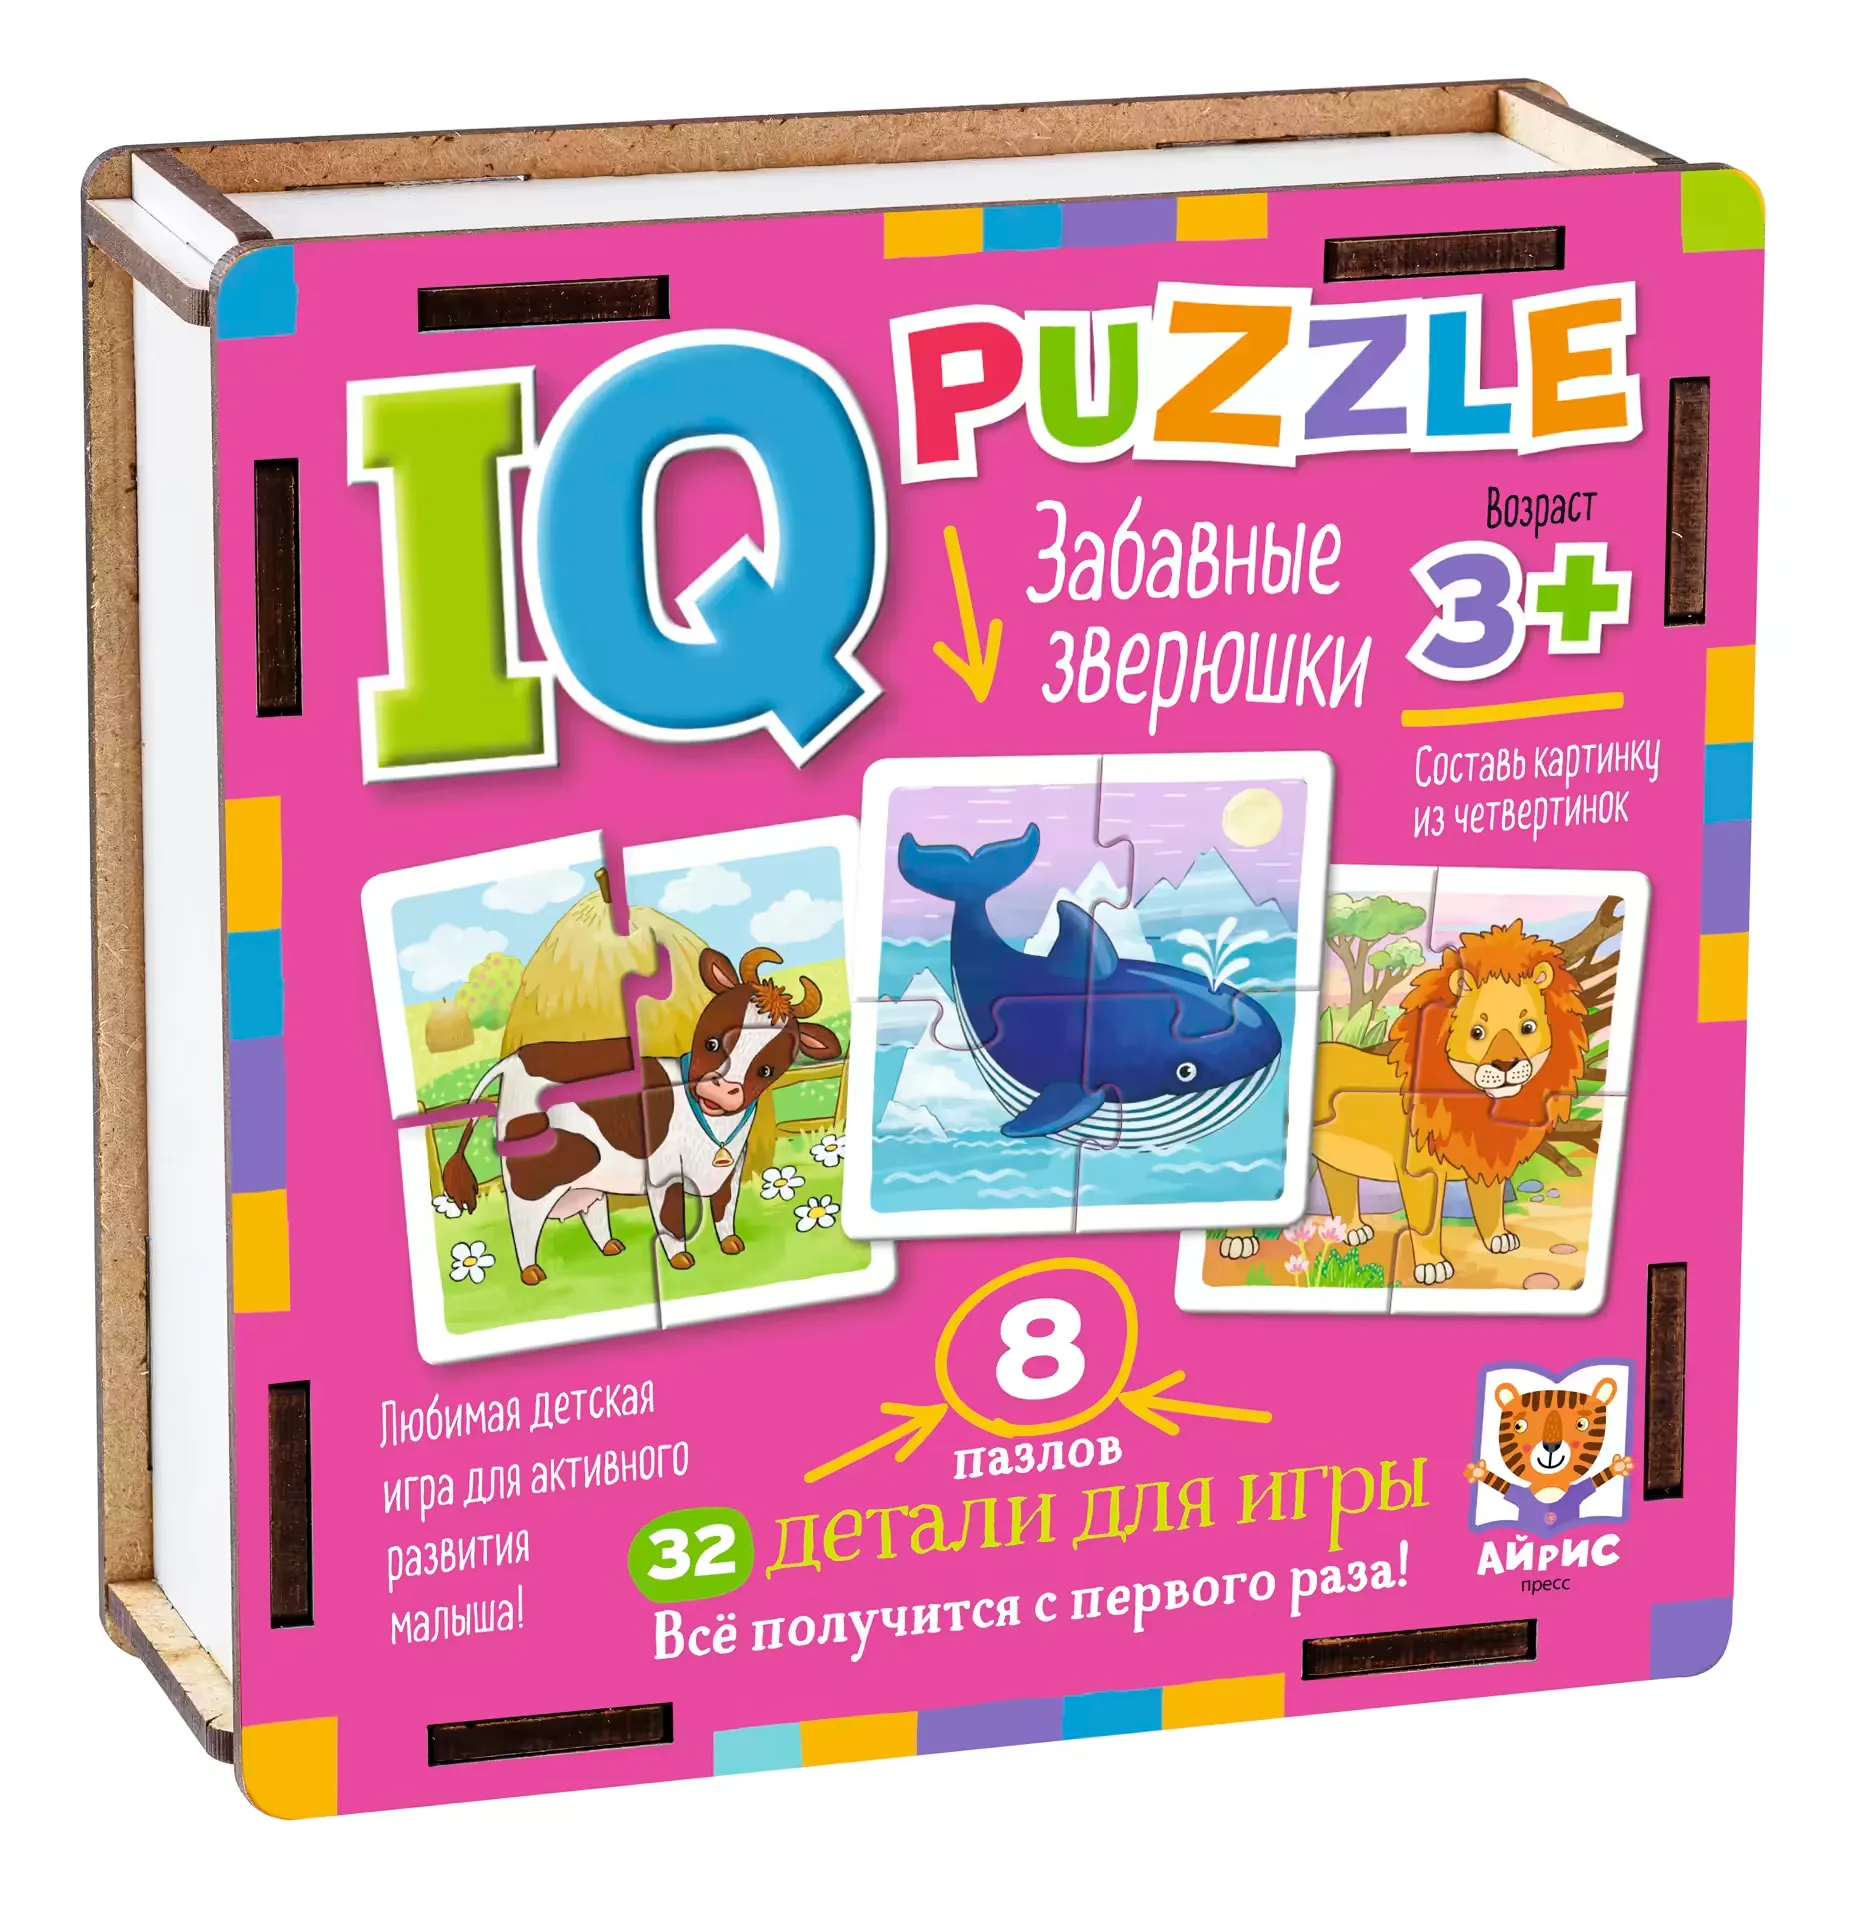 IQ Puzzle koka puzle "Jautri dzīvnieki"